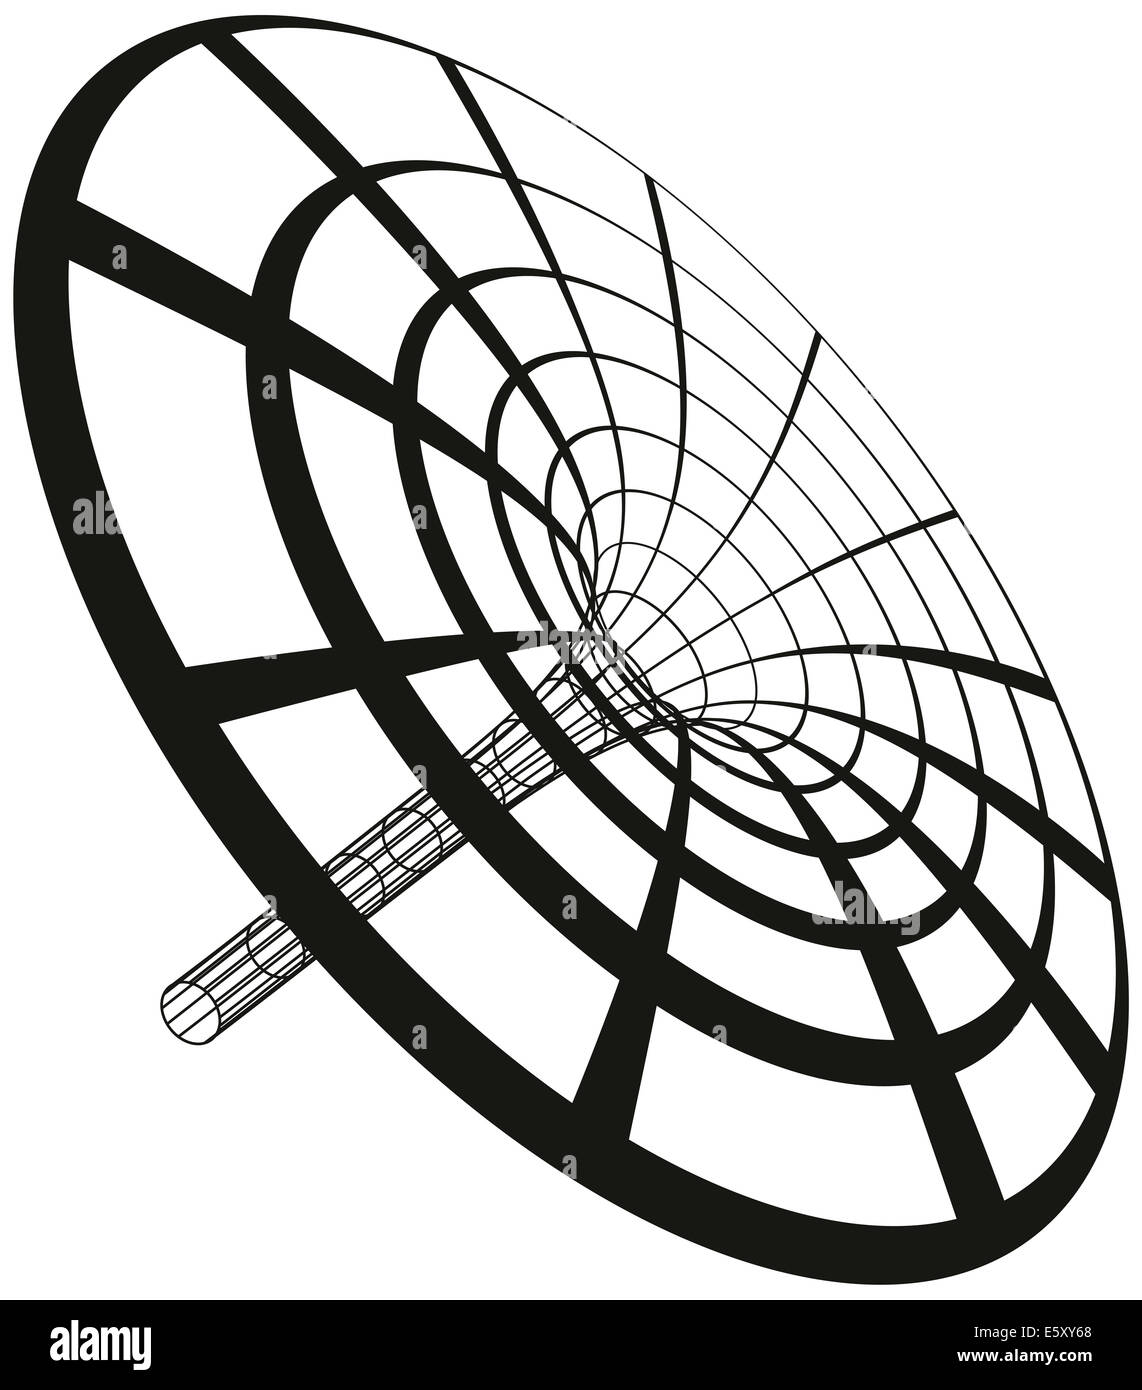 Schwarzes Loch Trichter - schwarzes Loch-Trichter mit Kreisen und Linien erzeugt. Abbildung auf weißem Hintergrund. Stockfoto